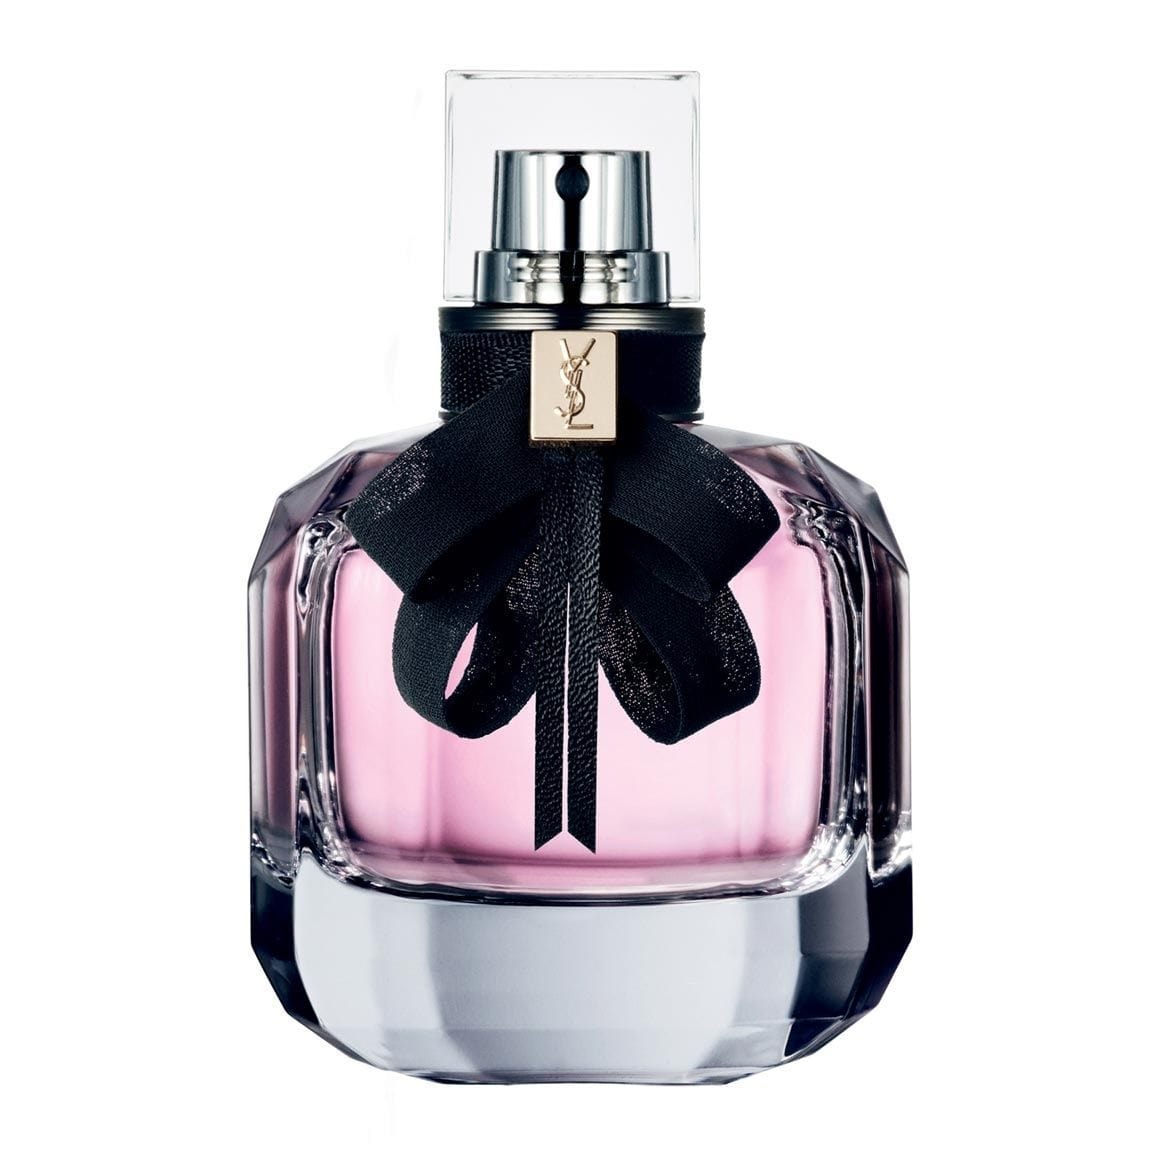 Parfums Mon Paris de la marque Yves Saint Laurent pour femme 